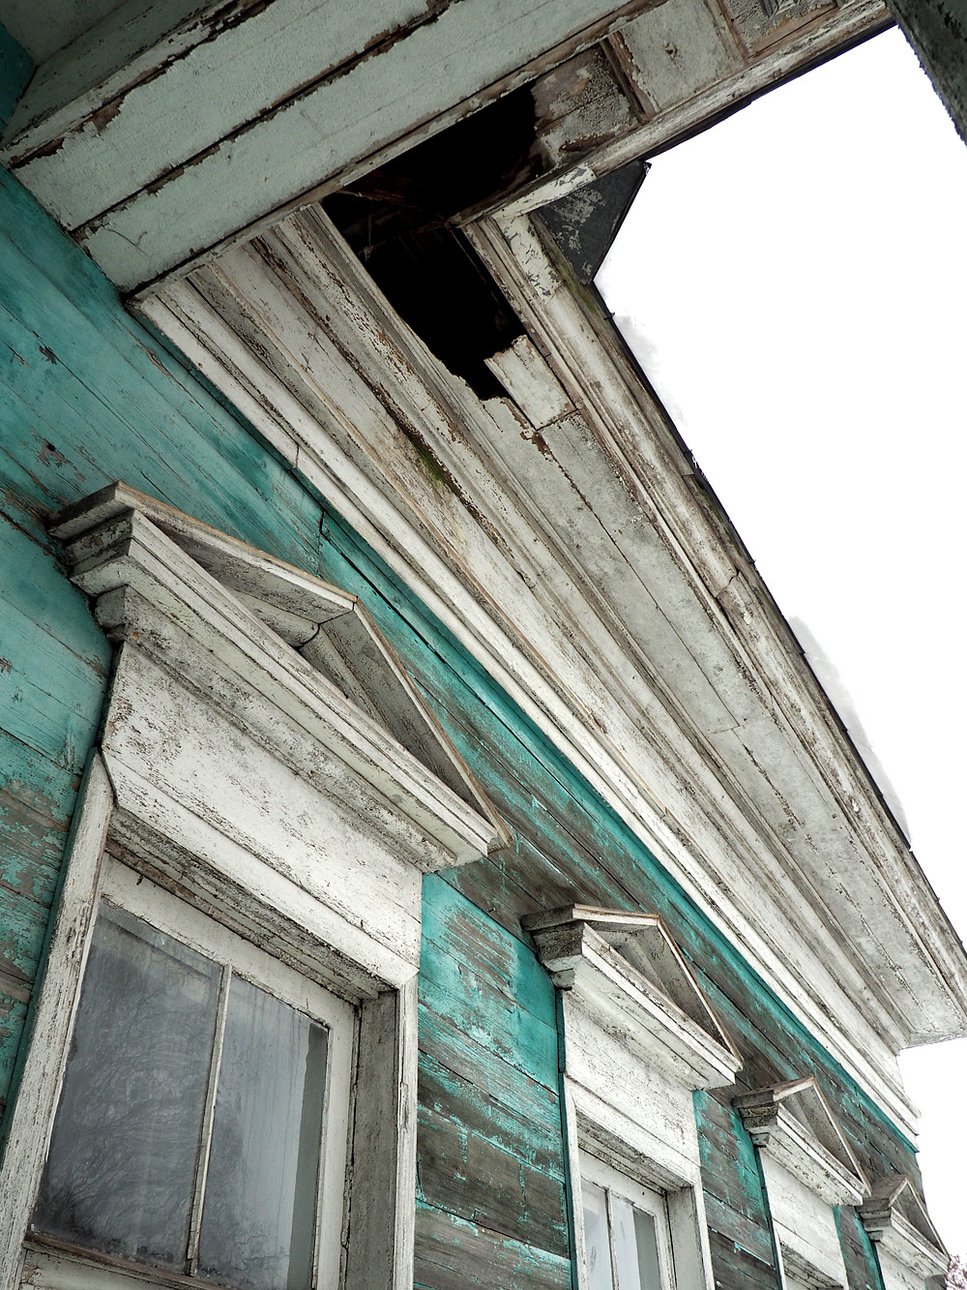 Нынешнее состояние усадебного дома вызывает тревогу, хотя многое в Спасском-Куркино еще можно спасти. Фото: Юлия Виноградова